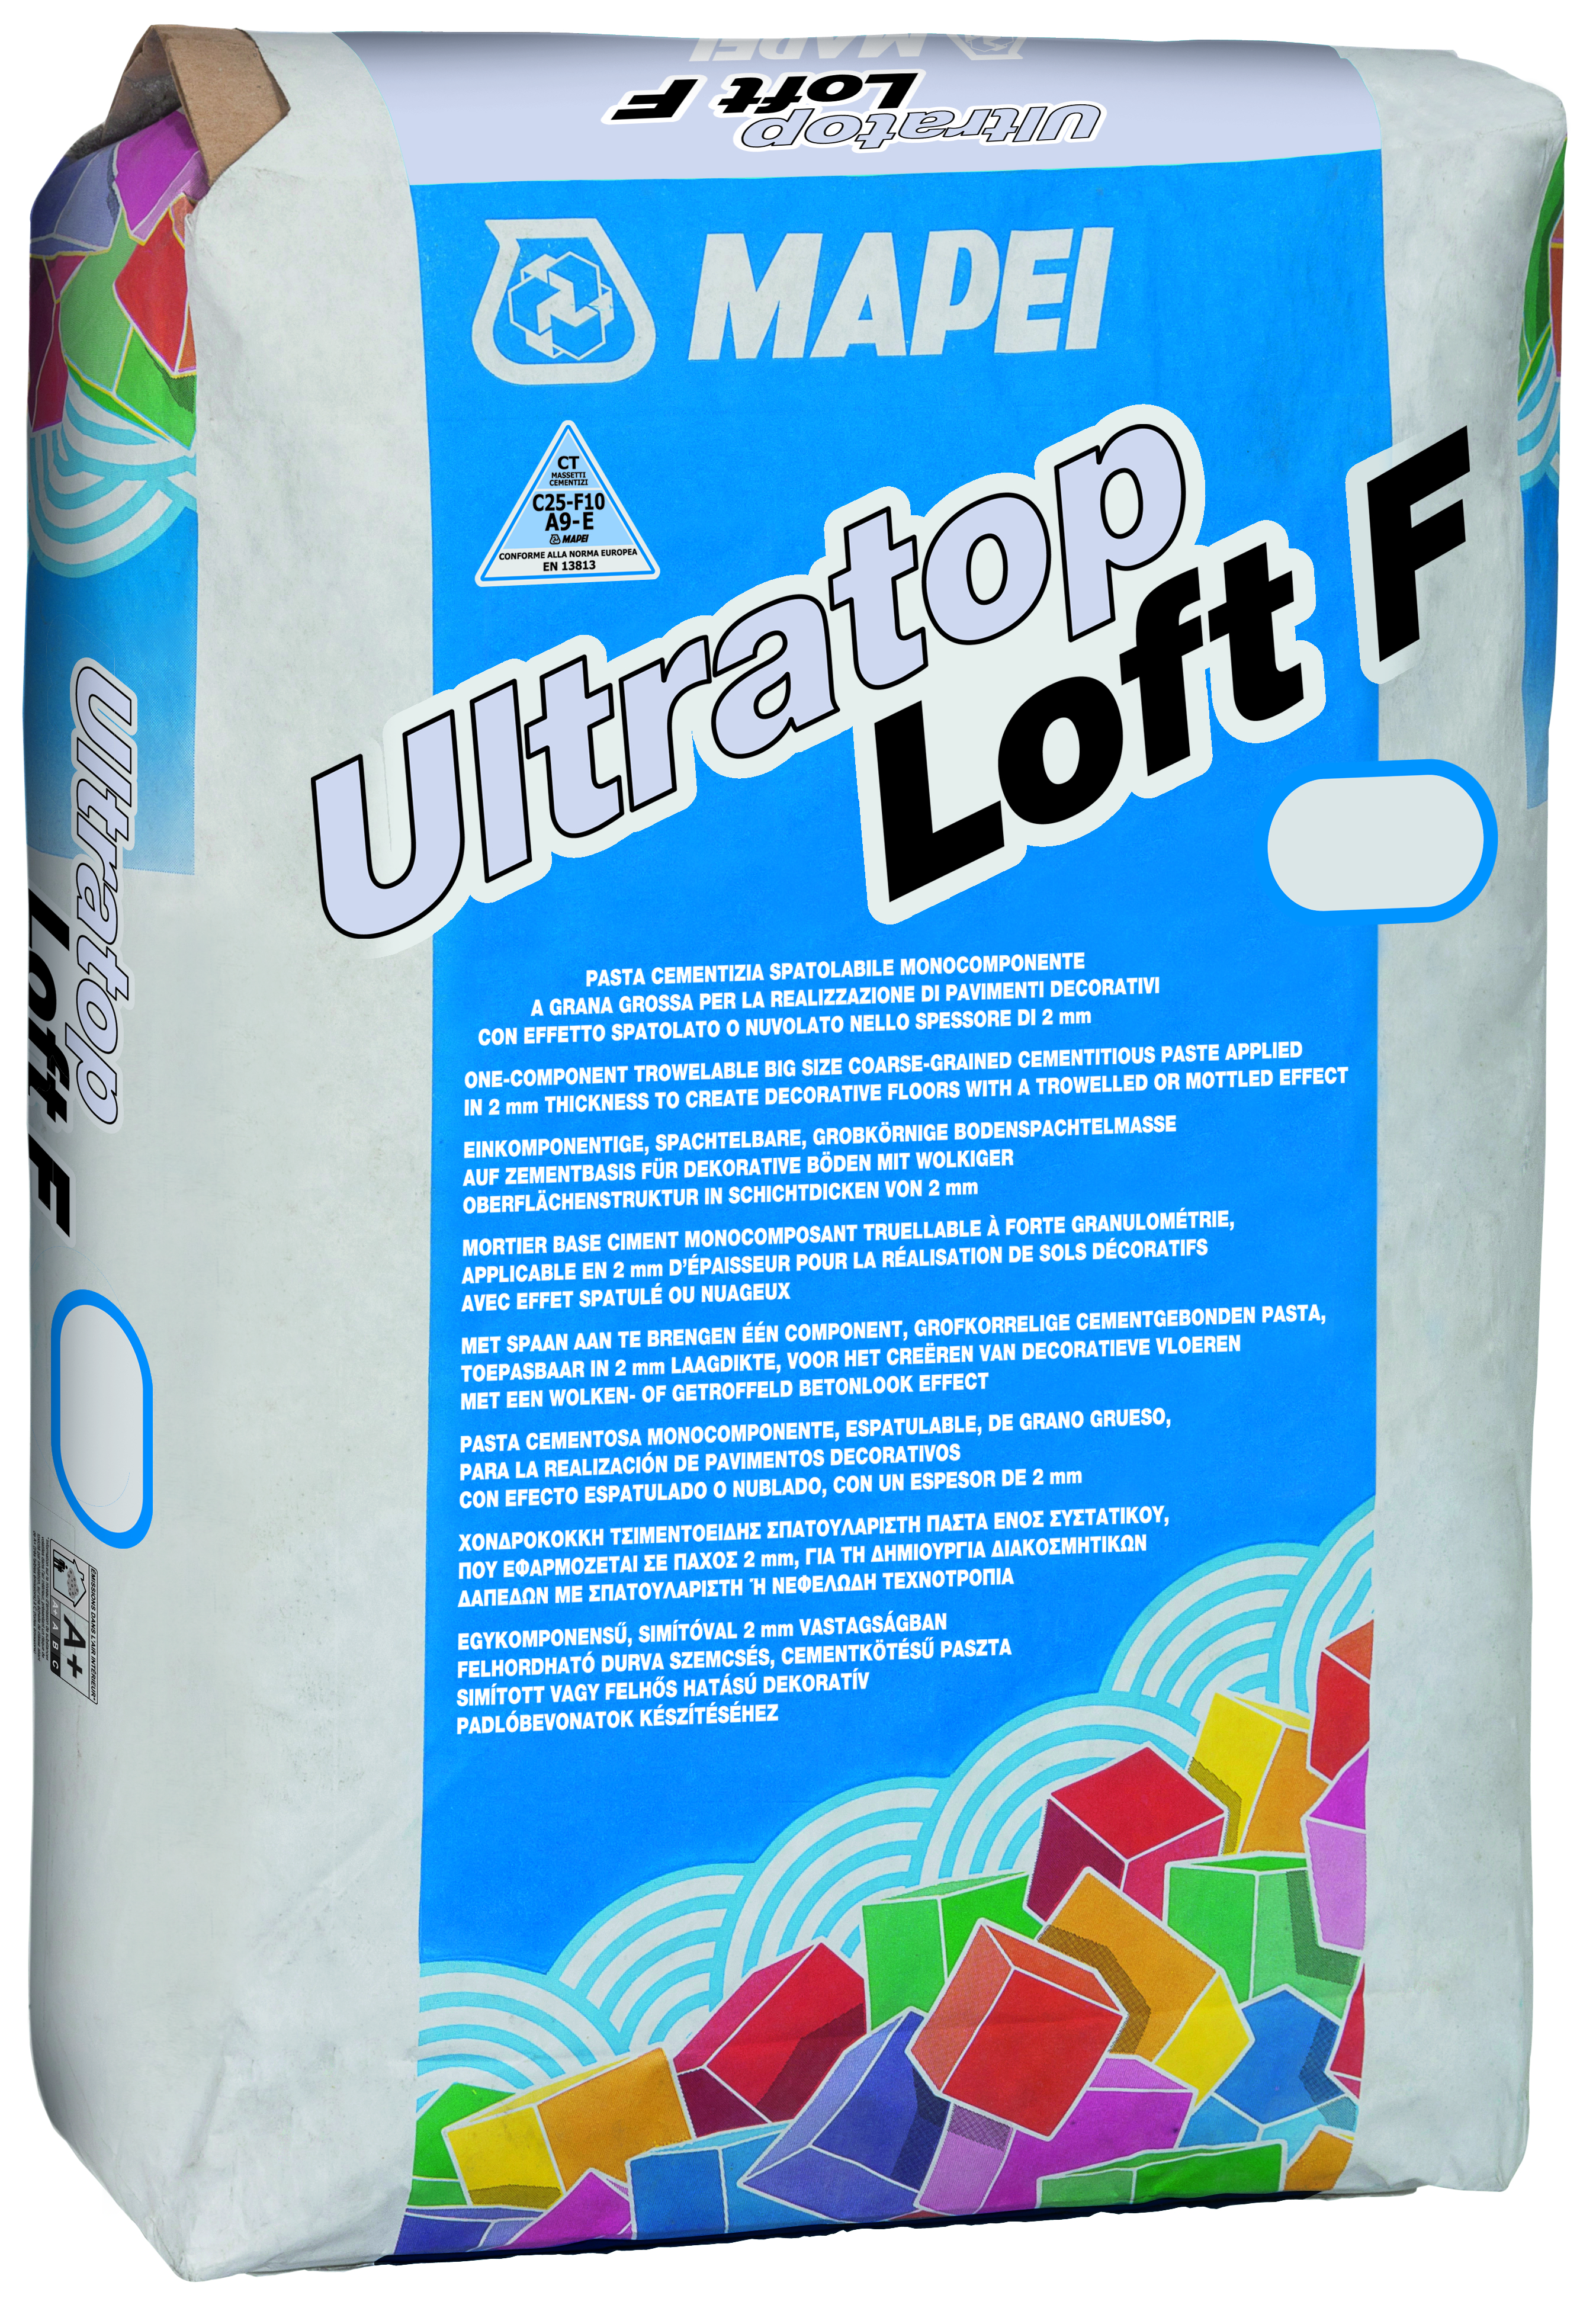 Ultratop-Loft-F-25kg-int